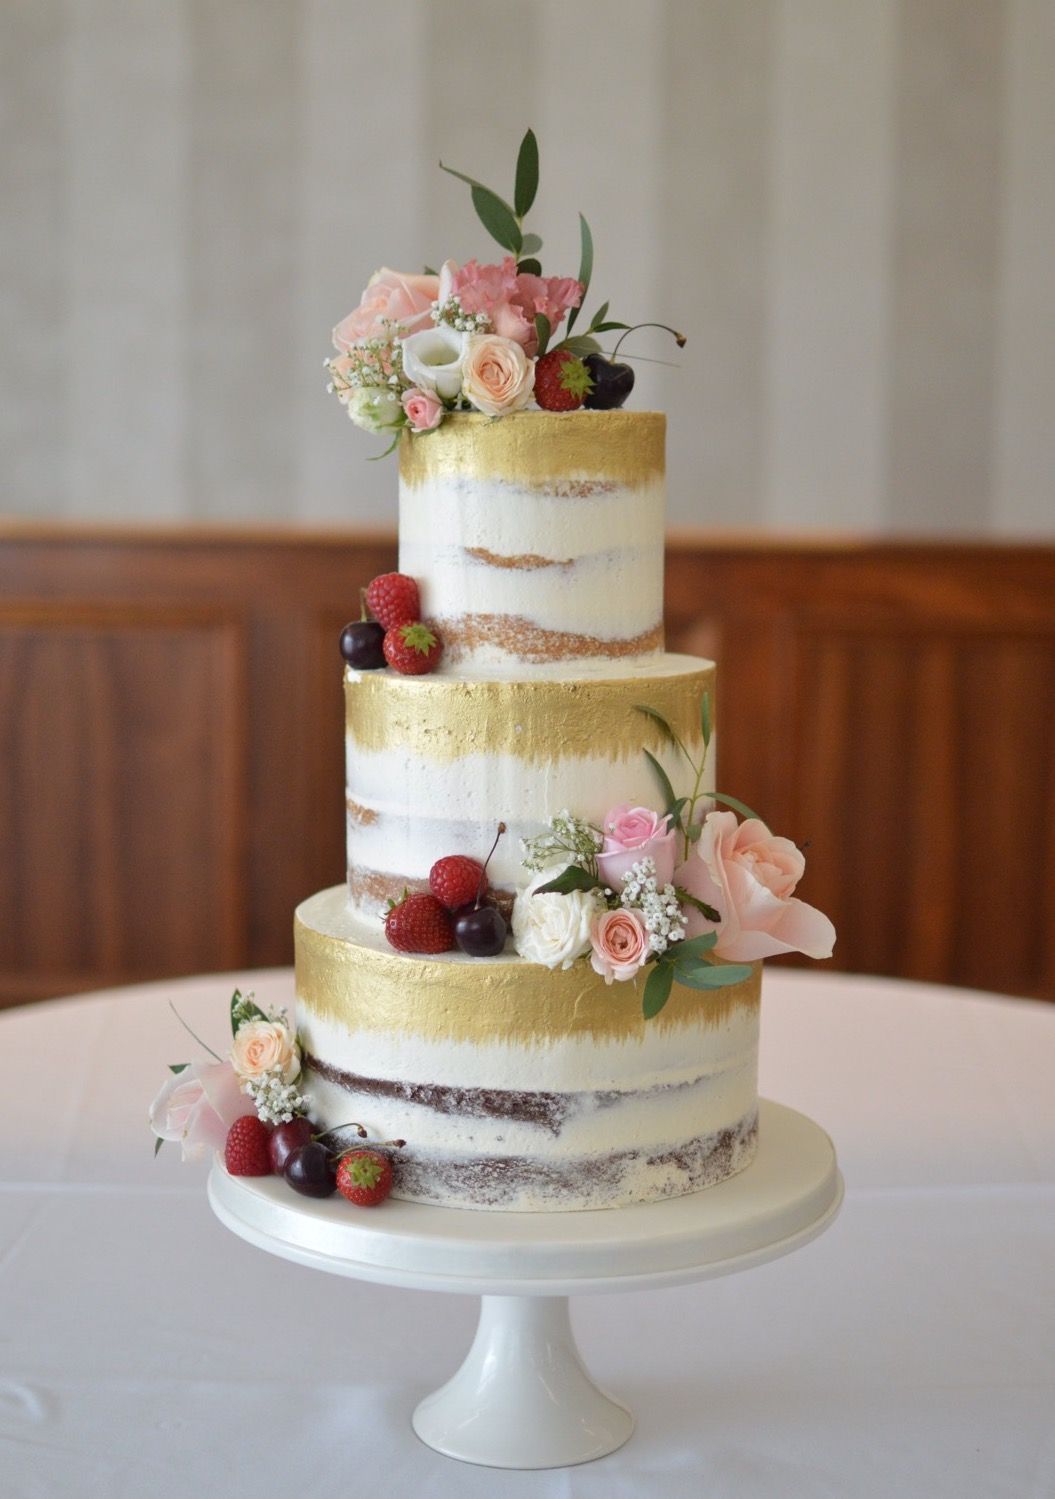 bolo de casamento rustico Chic